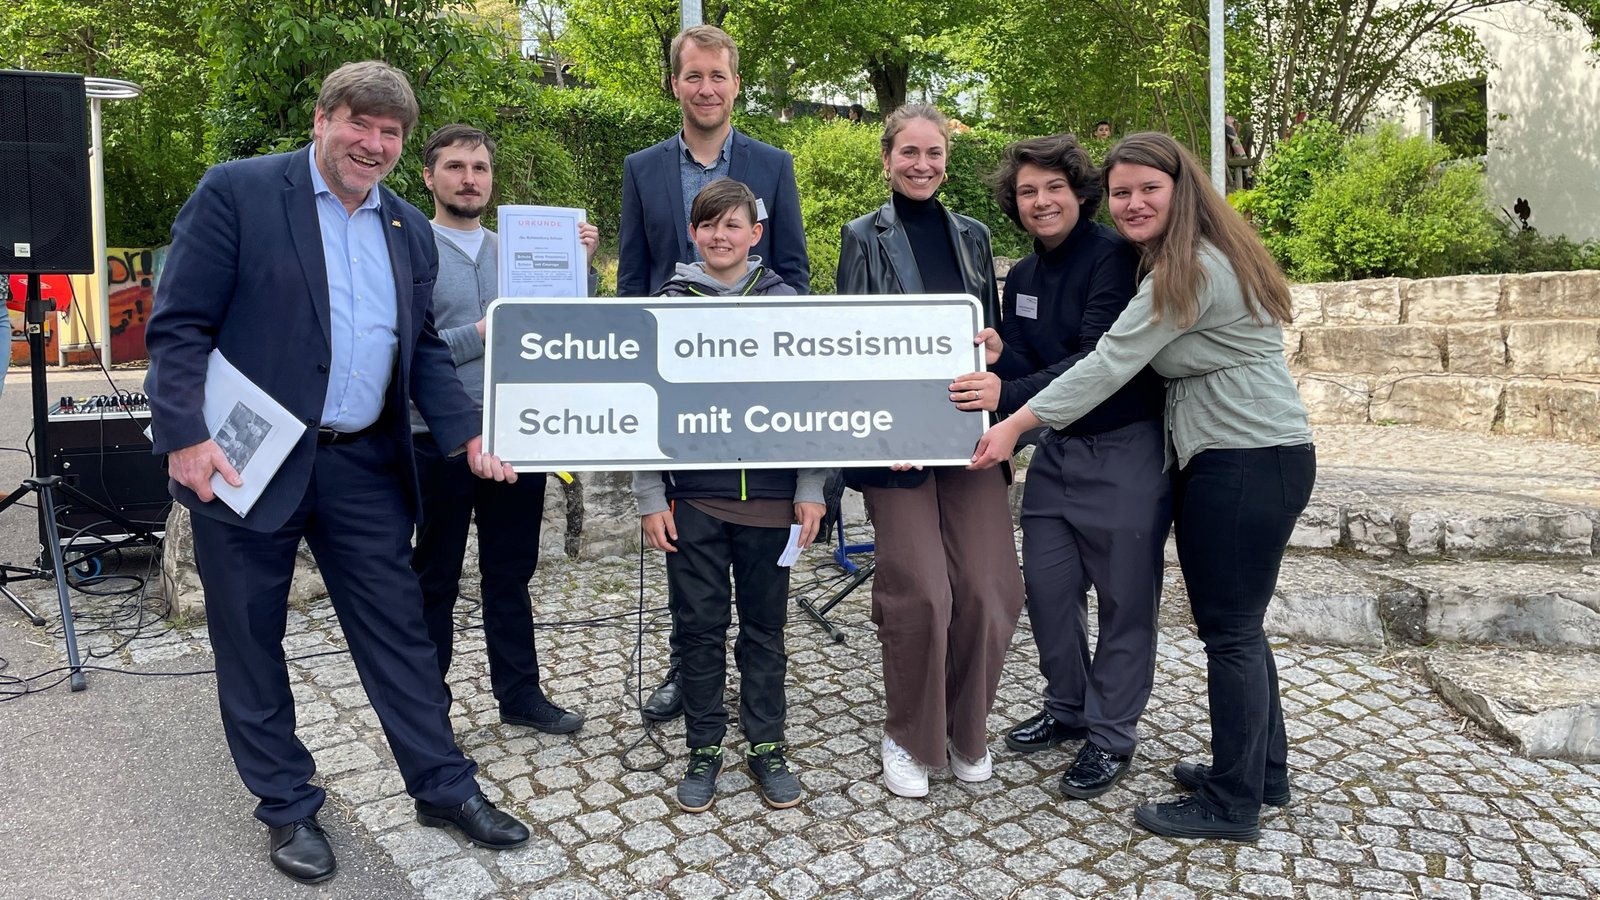 Markus Rösler (links), Andreas Haiß, Jürgen Joos (hinten) und Sophia Oster (Dritte von rechts) zeigen die Plakette, welche ihre Aufnahme im Antirassismus-Schulnetzwerk bestätigt. Foto: Stogios